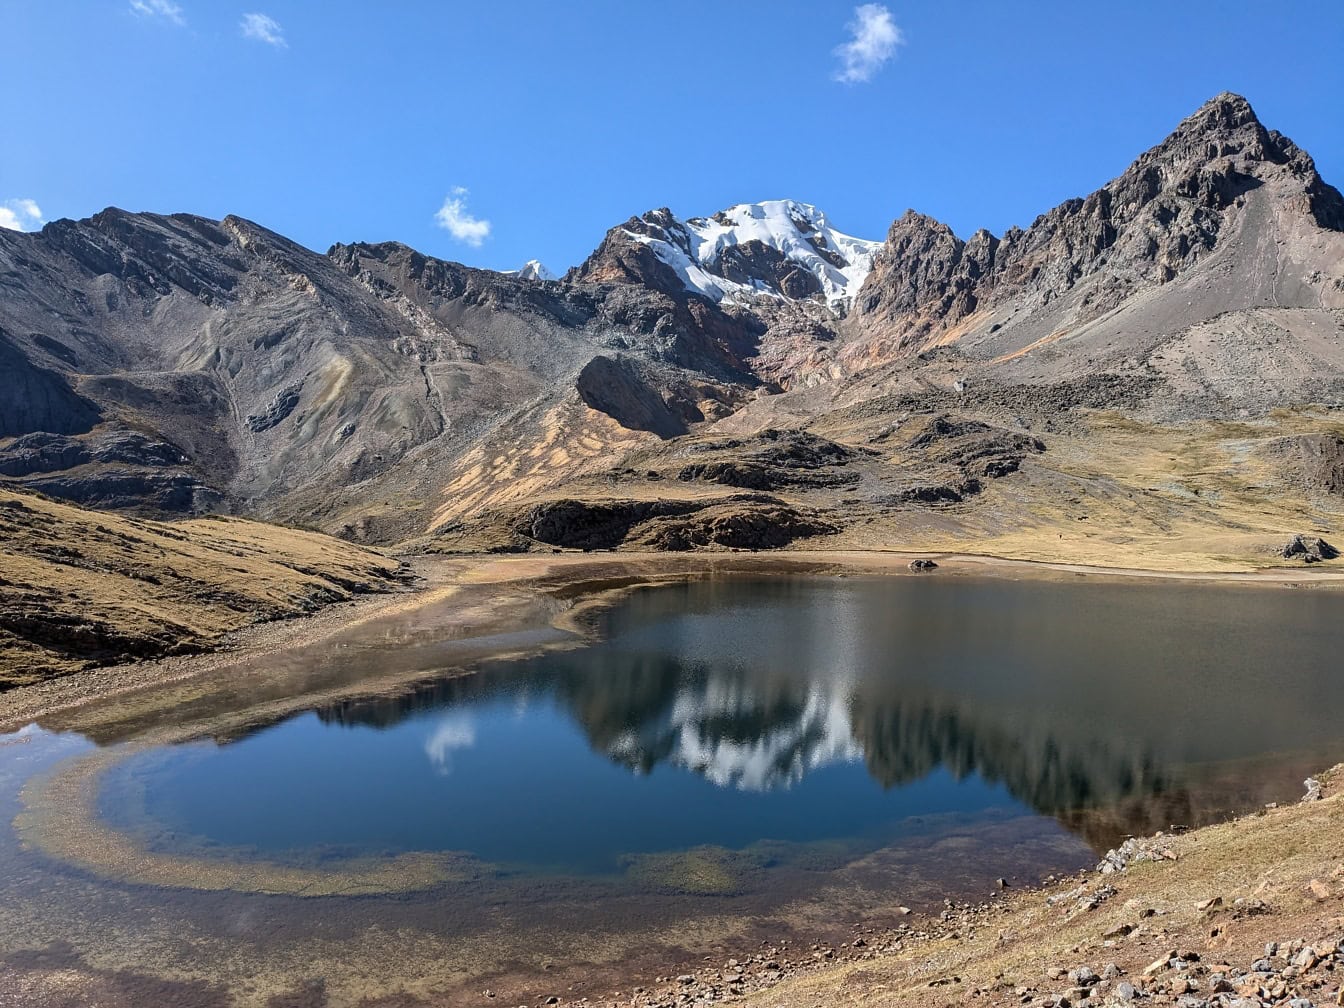 Lago in montagna al passo Paso de Carhuac nella catena montuosa della Cordigliera Huayhuash in Perù, una vista panoramica del Sud America